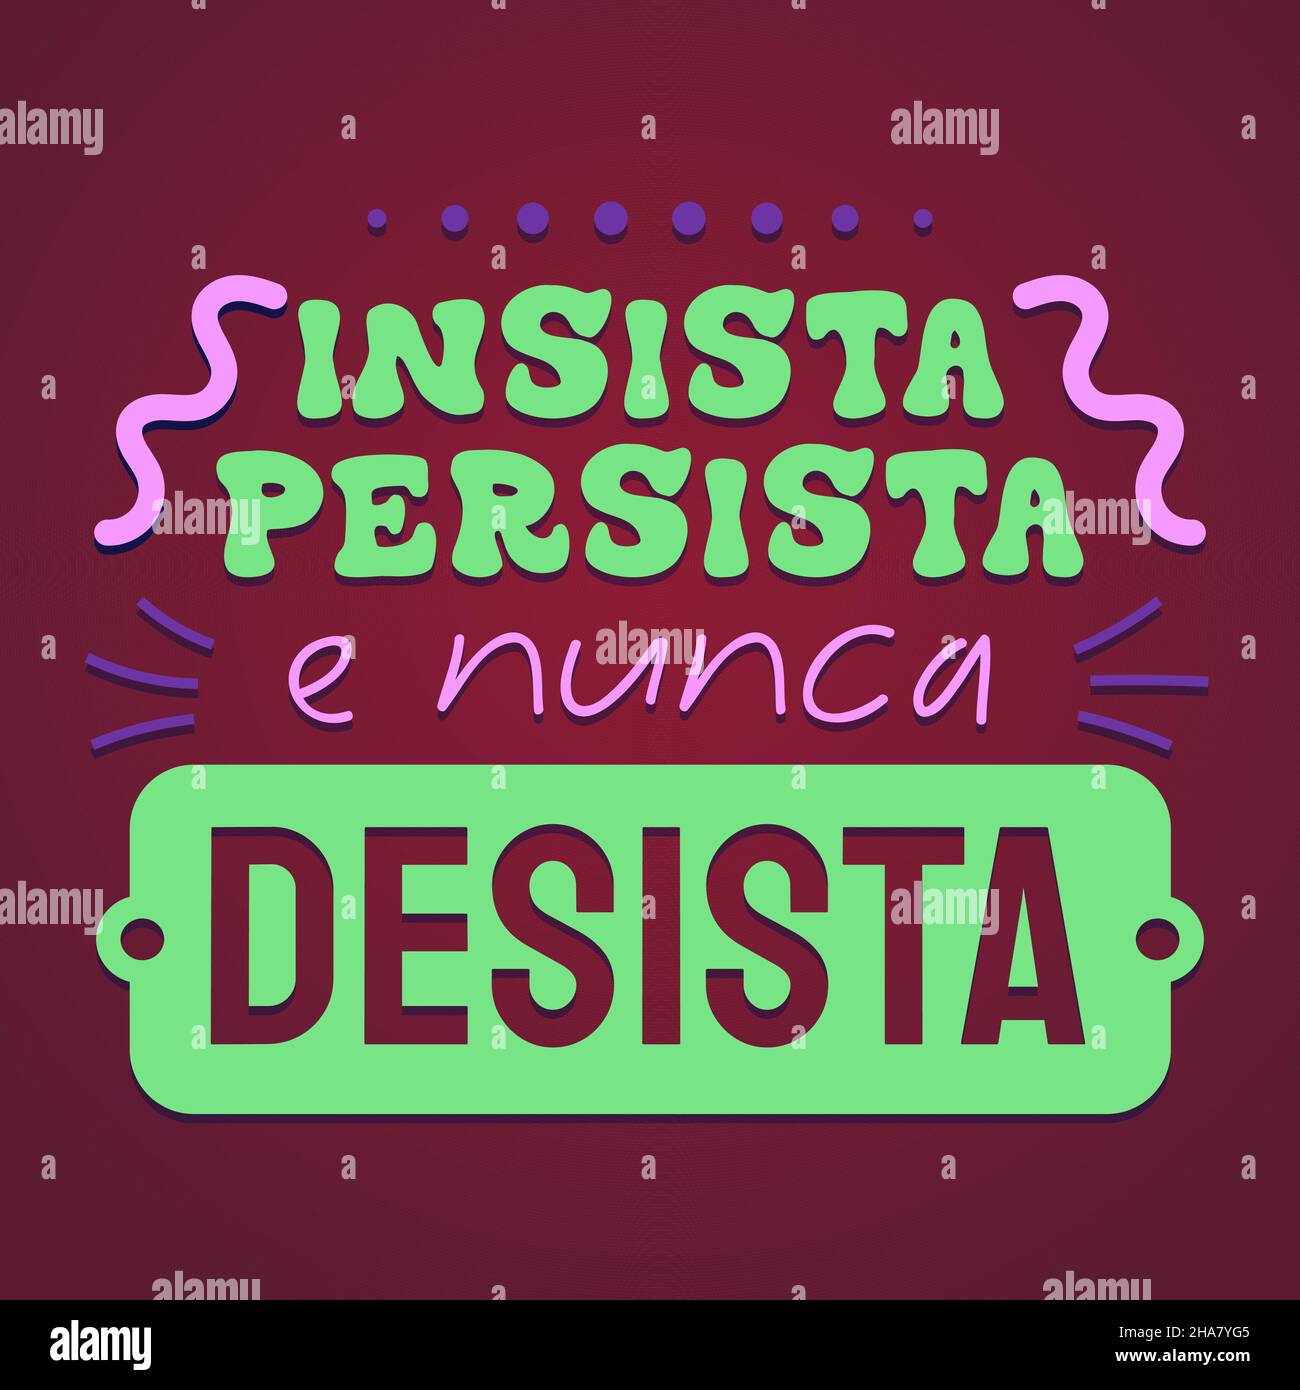 Affiche encourageante en portugais brésilien.Traduction - insister, persister et ne jamais abandonner. Illustration de Vecteur